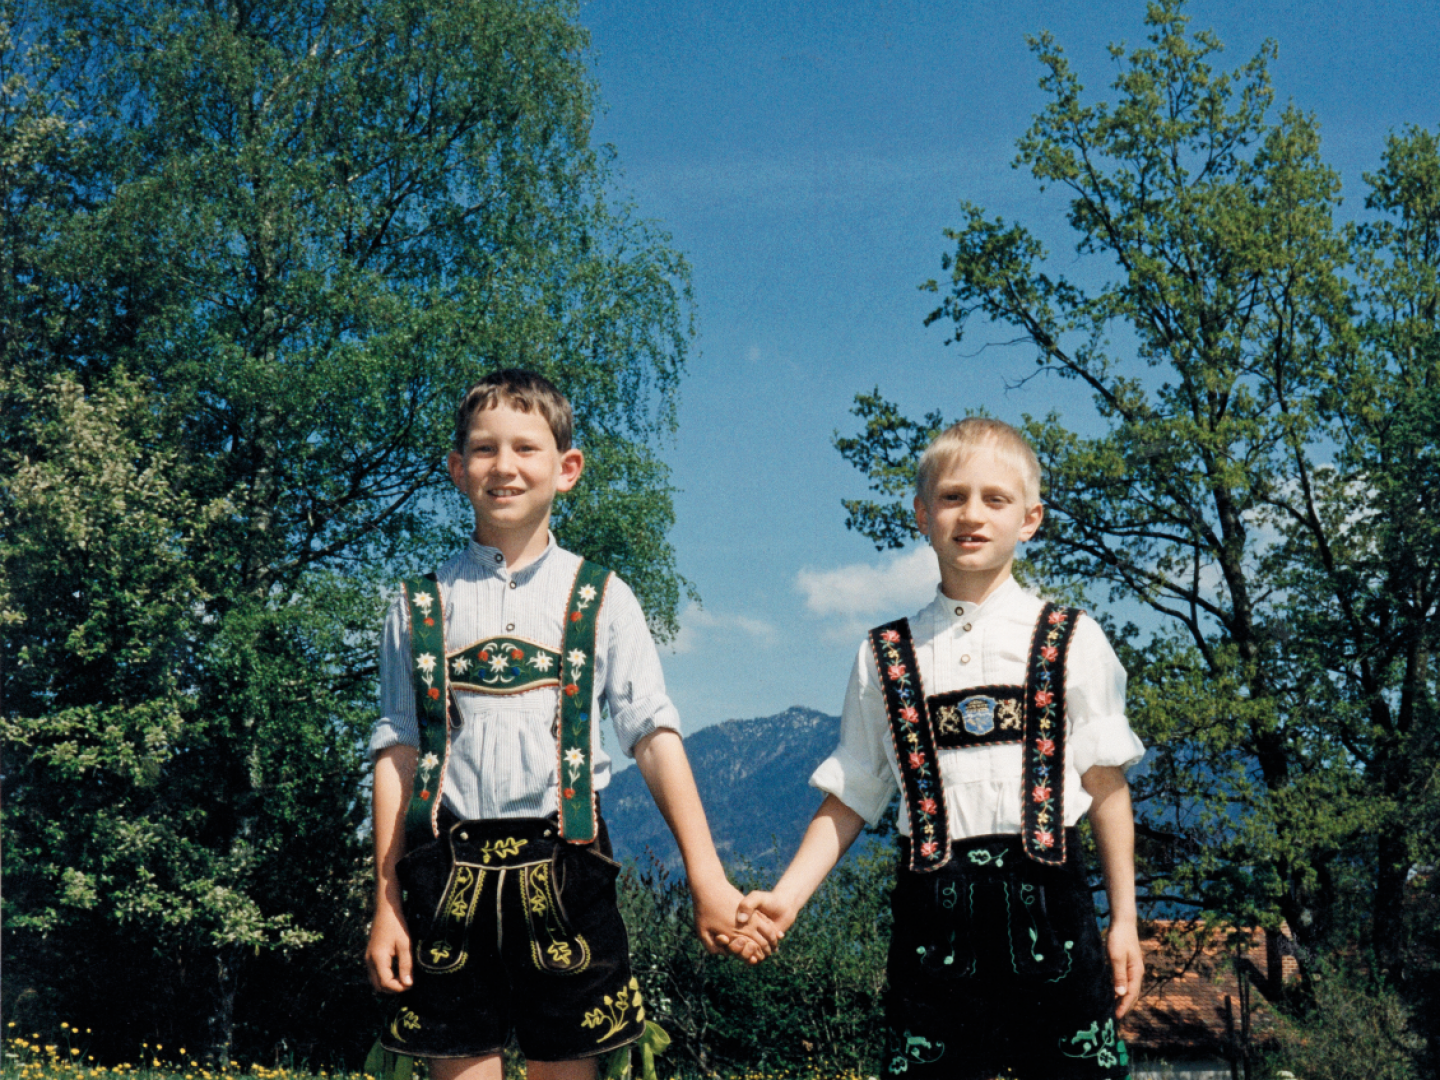 Zwei Jungen in bayerischer Tracht auf einer Bergwiese